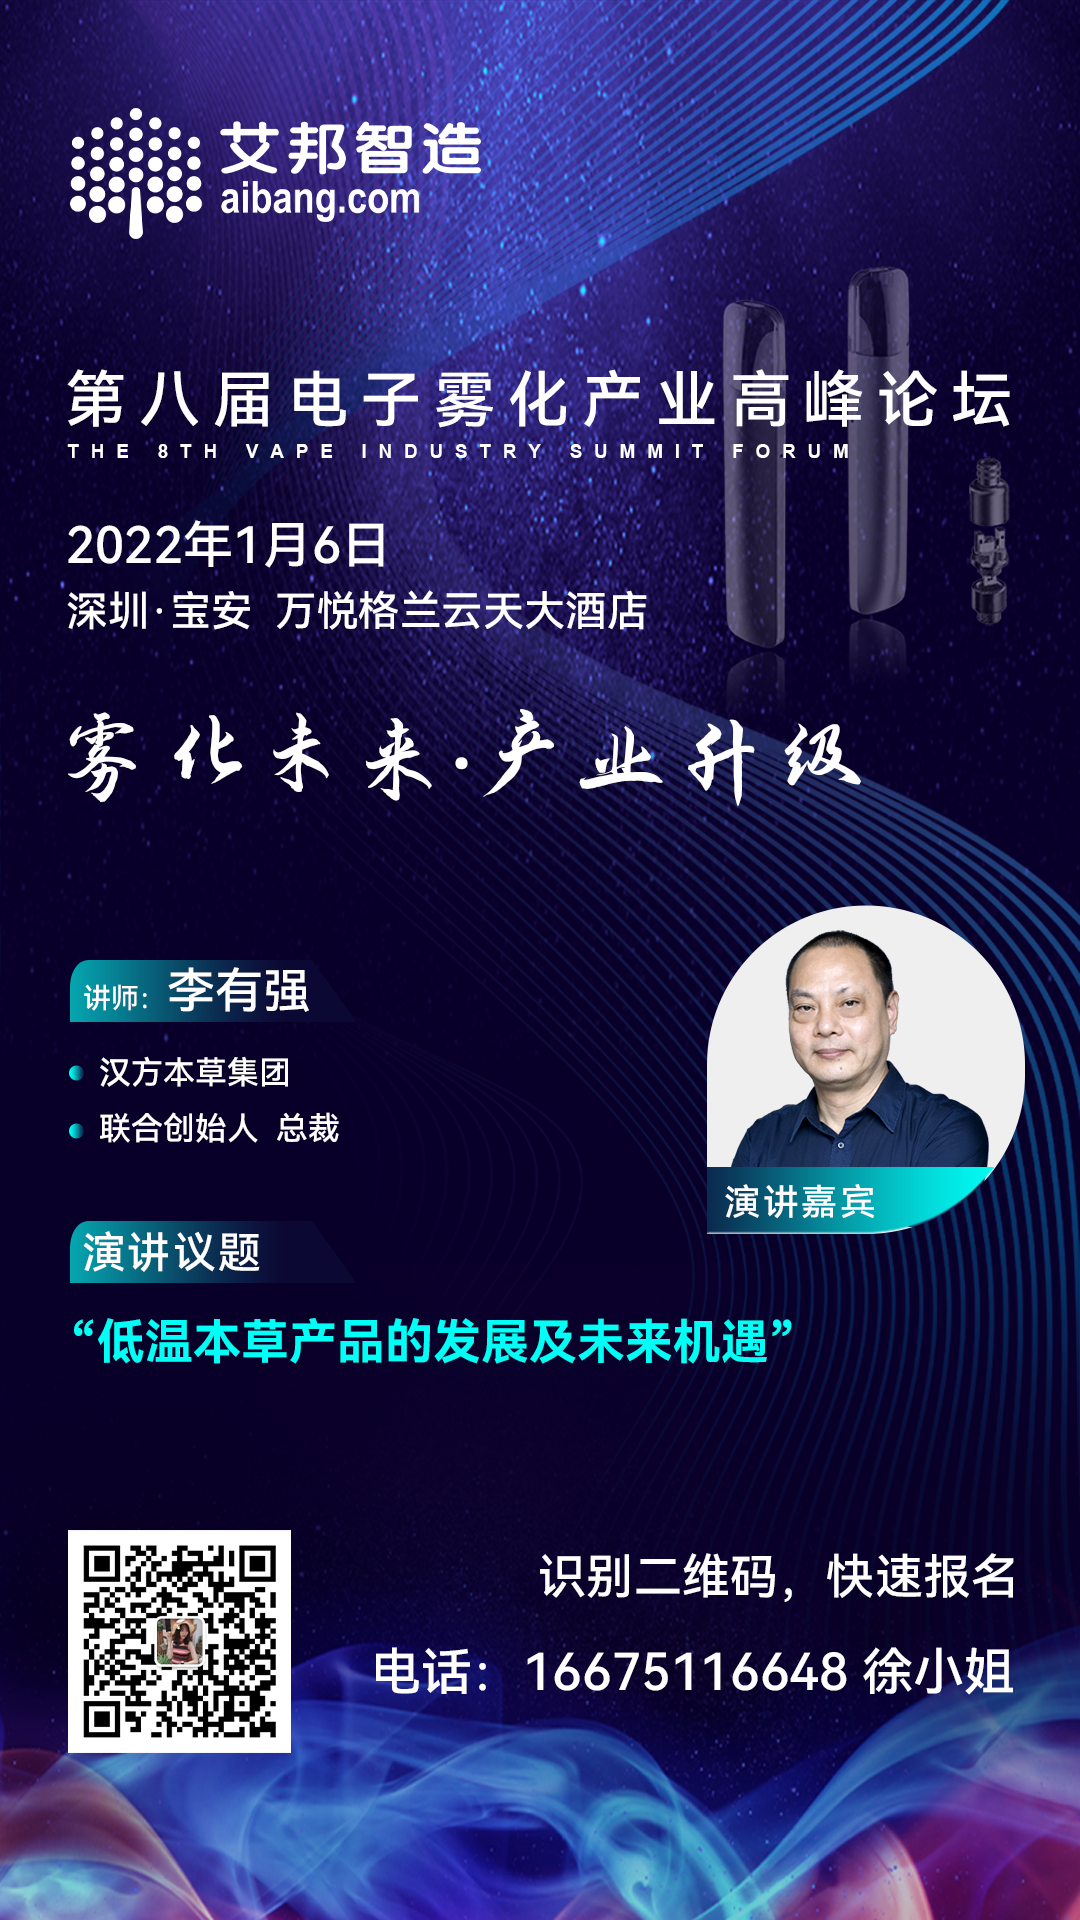 汉方本草集团将出席第八届电子雾化产业高峰论坛并做主题演讲（1月6日~深圳）